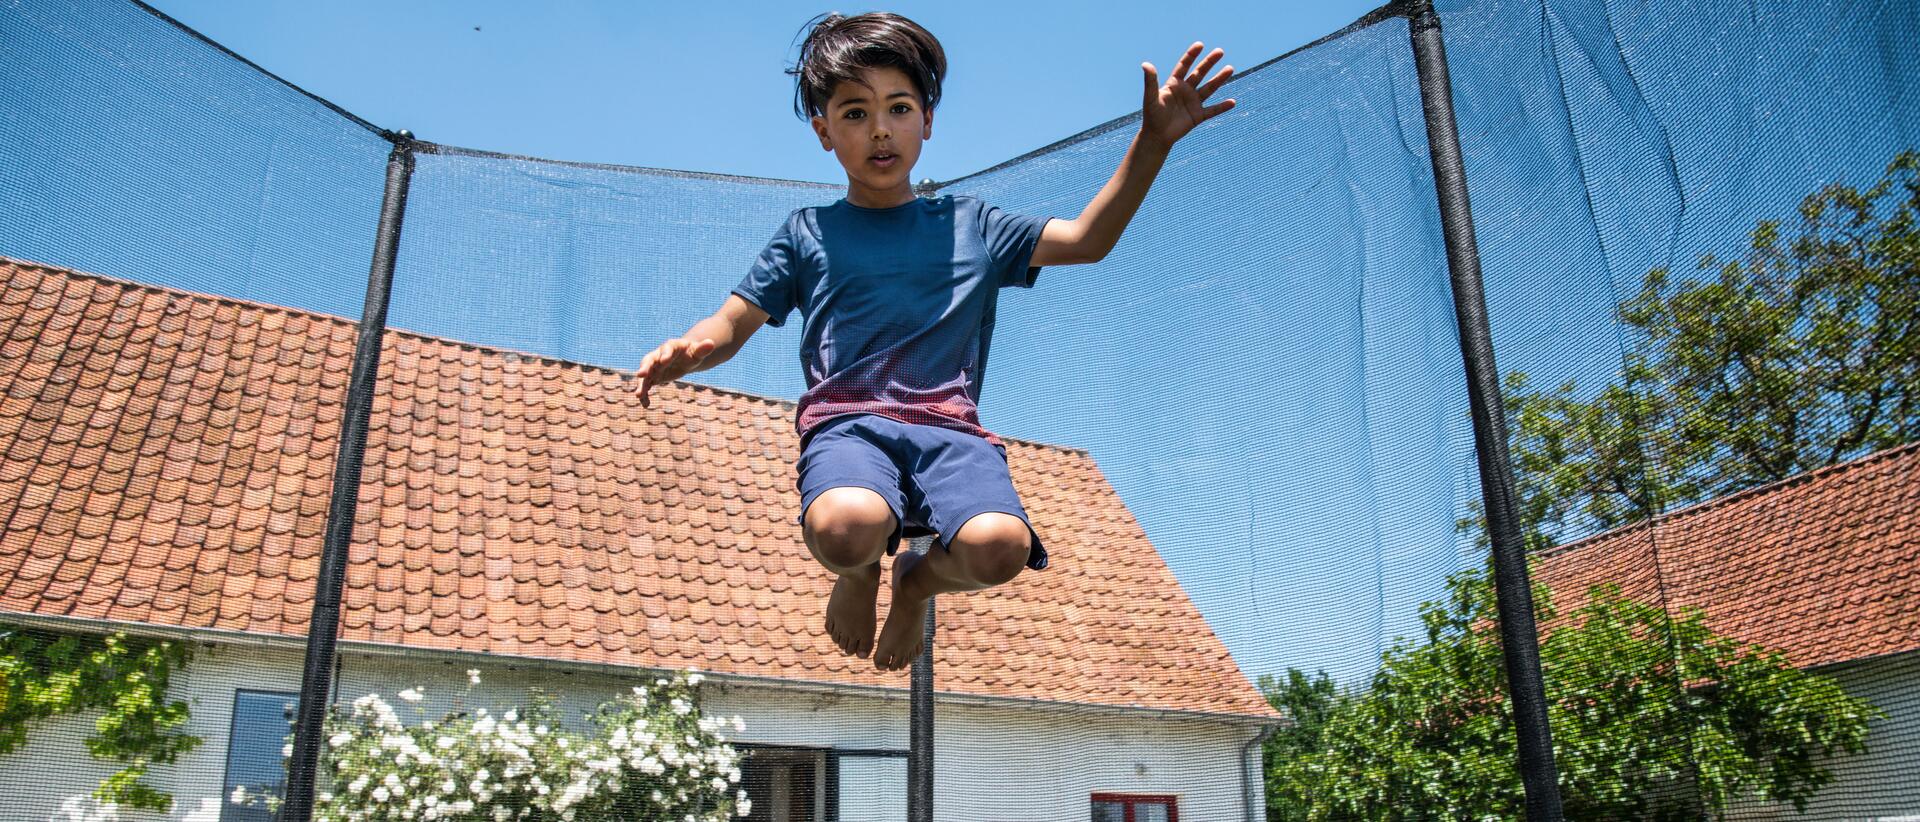 chłopiec skaczący na trampolinie ogrodowej